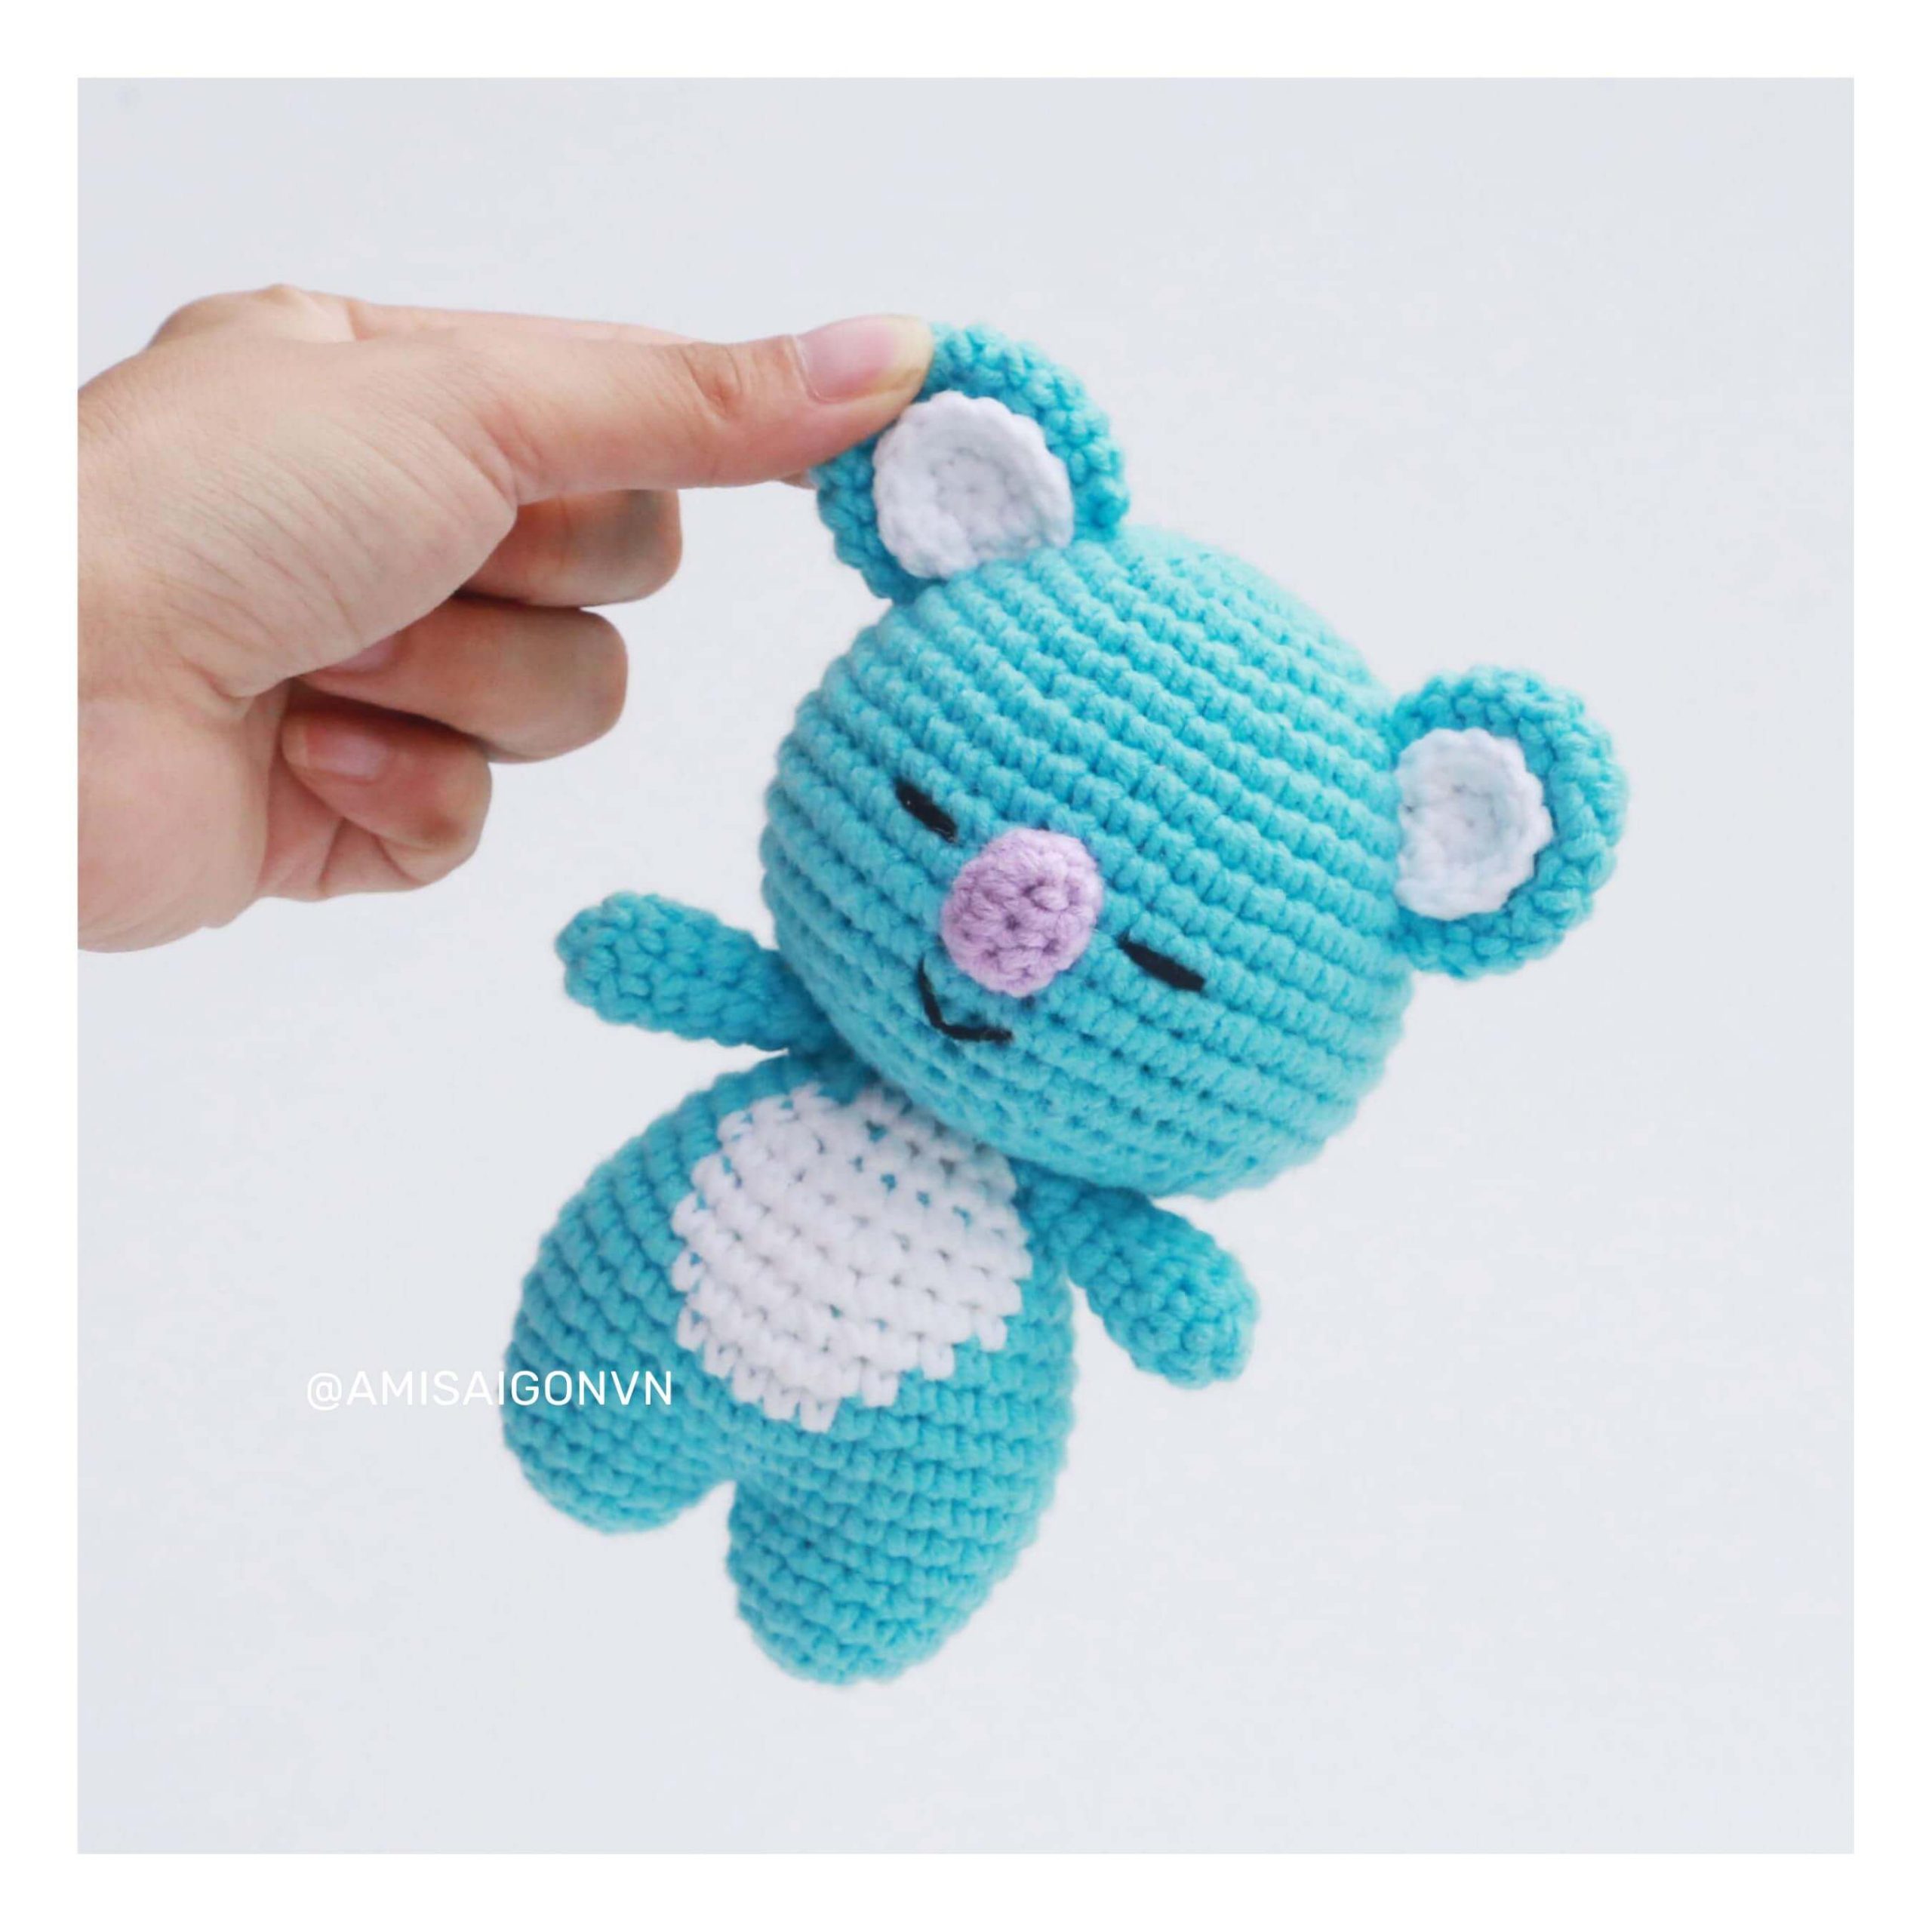 koya-amigurumi-crochet-pattern-amisaigon (5)